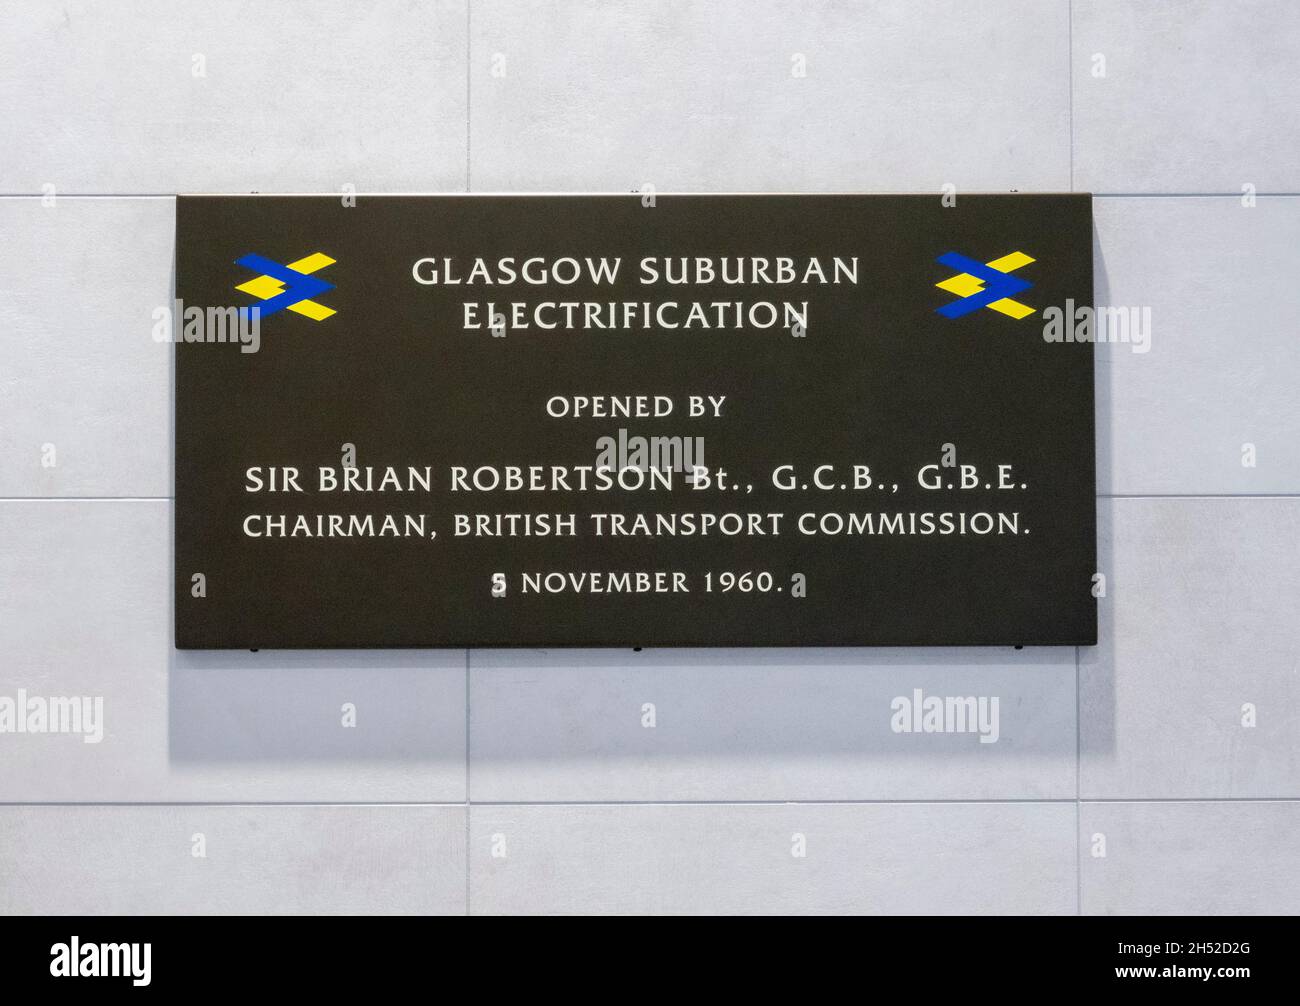 Placa en Queen Street Railway Station en North Hanover Street Glasgow Escocia Reino Unido con respecto a 40 años de electrificación suburbana de Glasgow Foto de stock